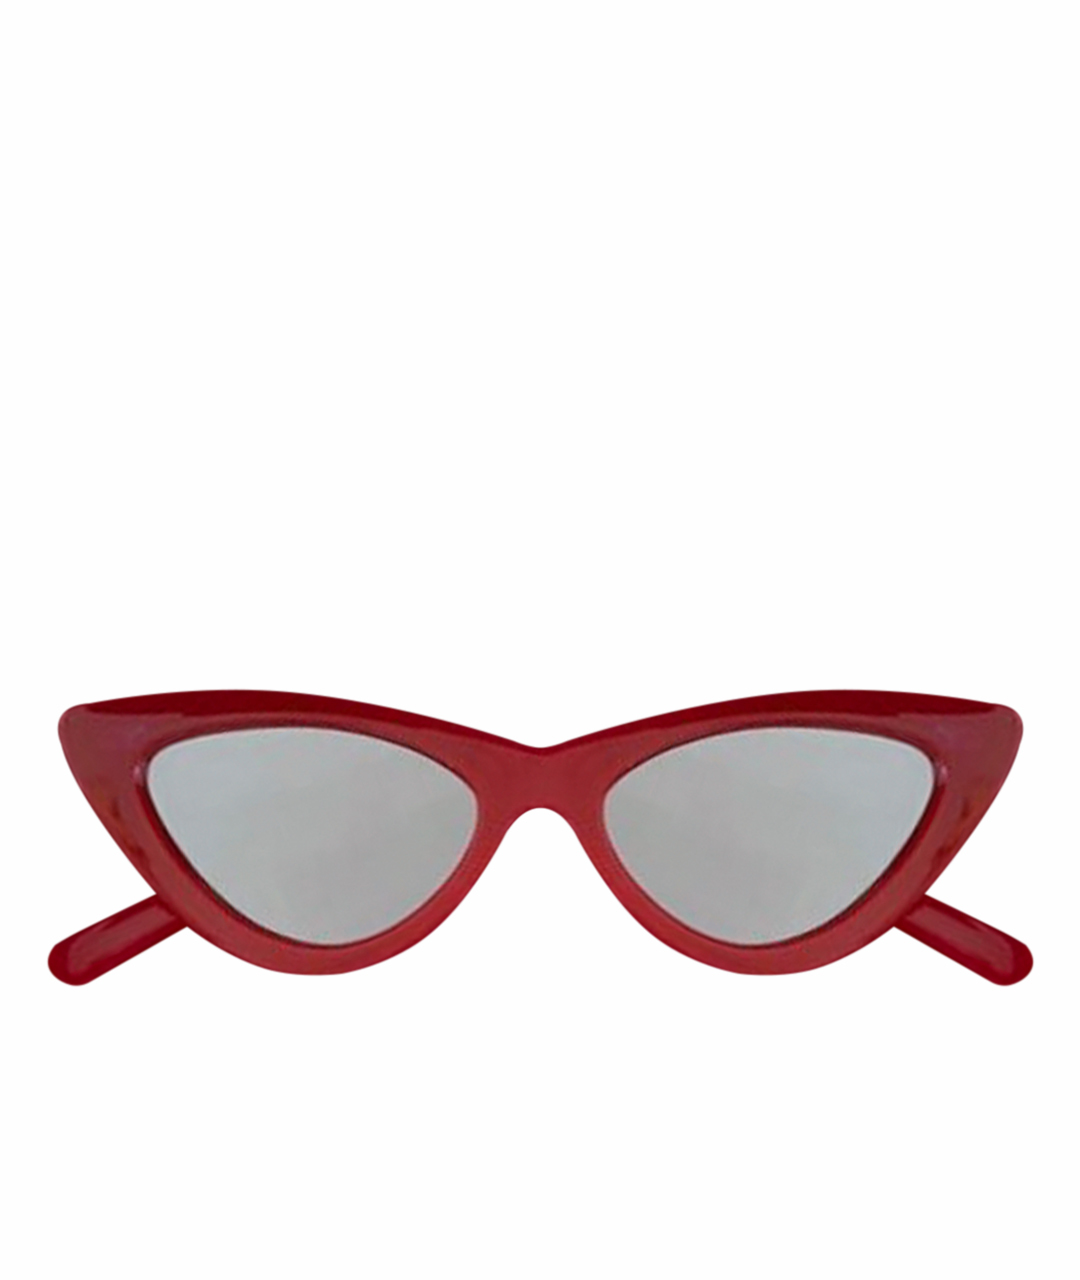 LE SPECS Красные пластиковые солнцезащитные очки, фото 1